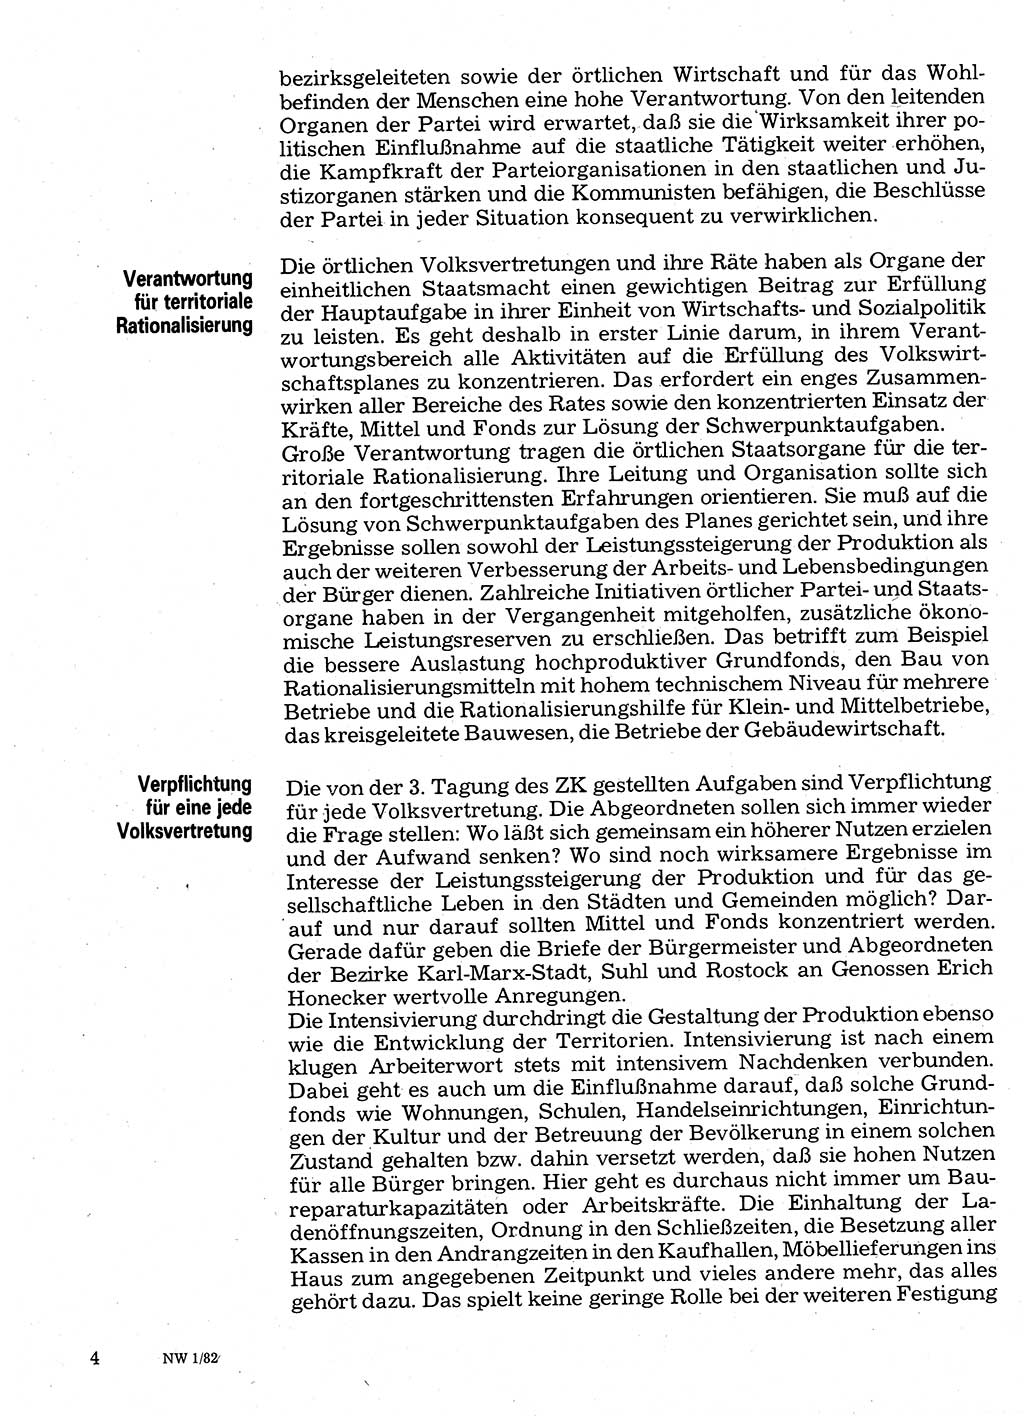 Neuer Weg (NW), Organ des Zentralkomitees (ZK) der SED (Sozialistische Einheitspartei Deutschlands) für Fragen des Parteilebens, 37. Jahrgang [Deutsche Demokratische Republik (DDR)] 1982, Seite 4 (NW ZK SED DDR 1982, S. 4)